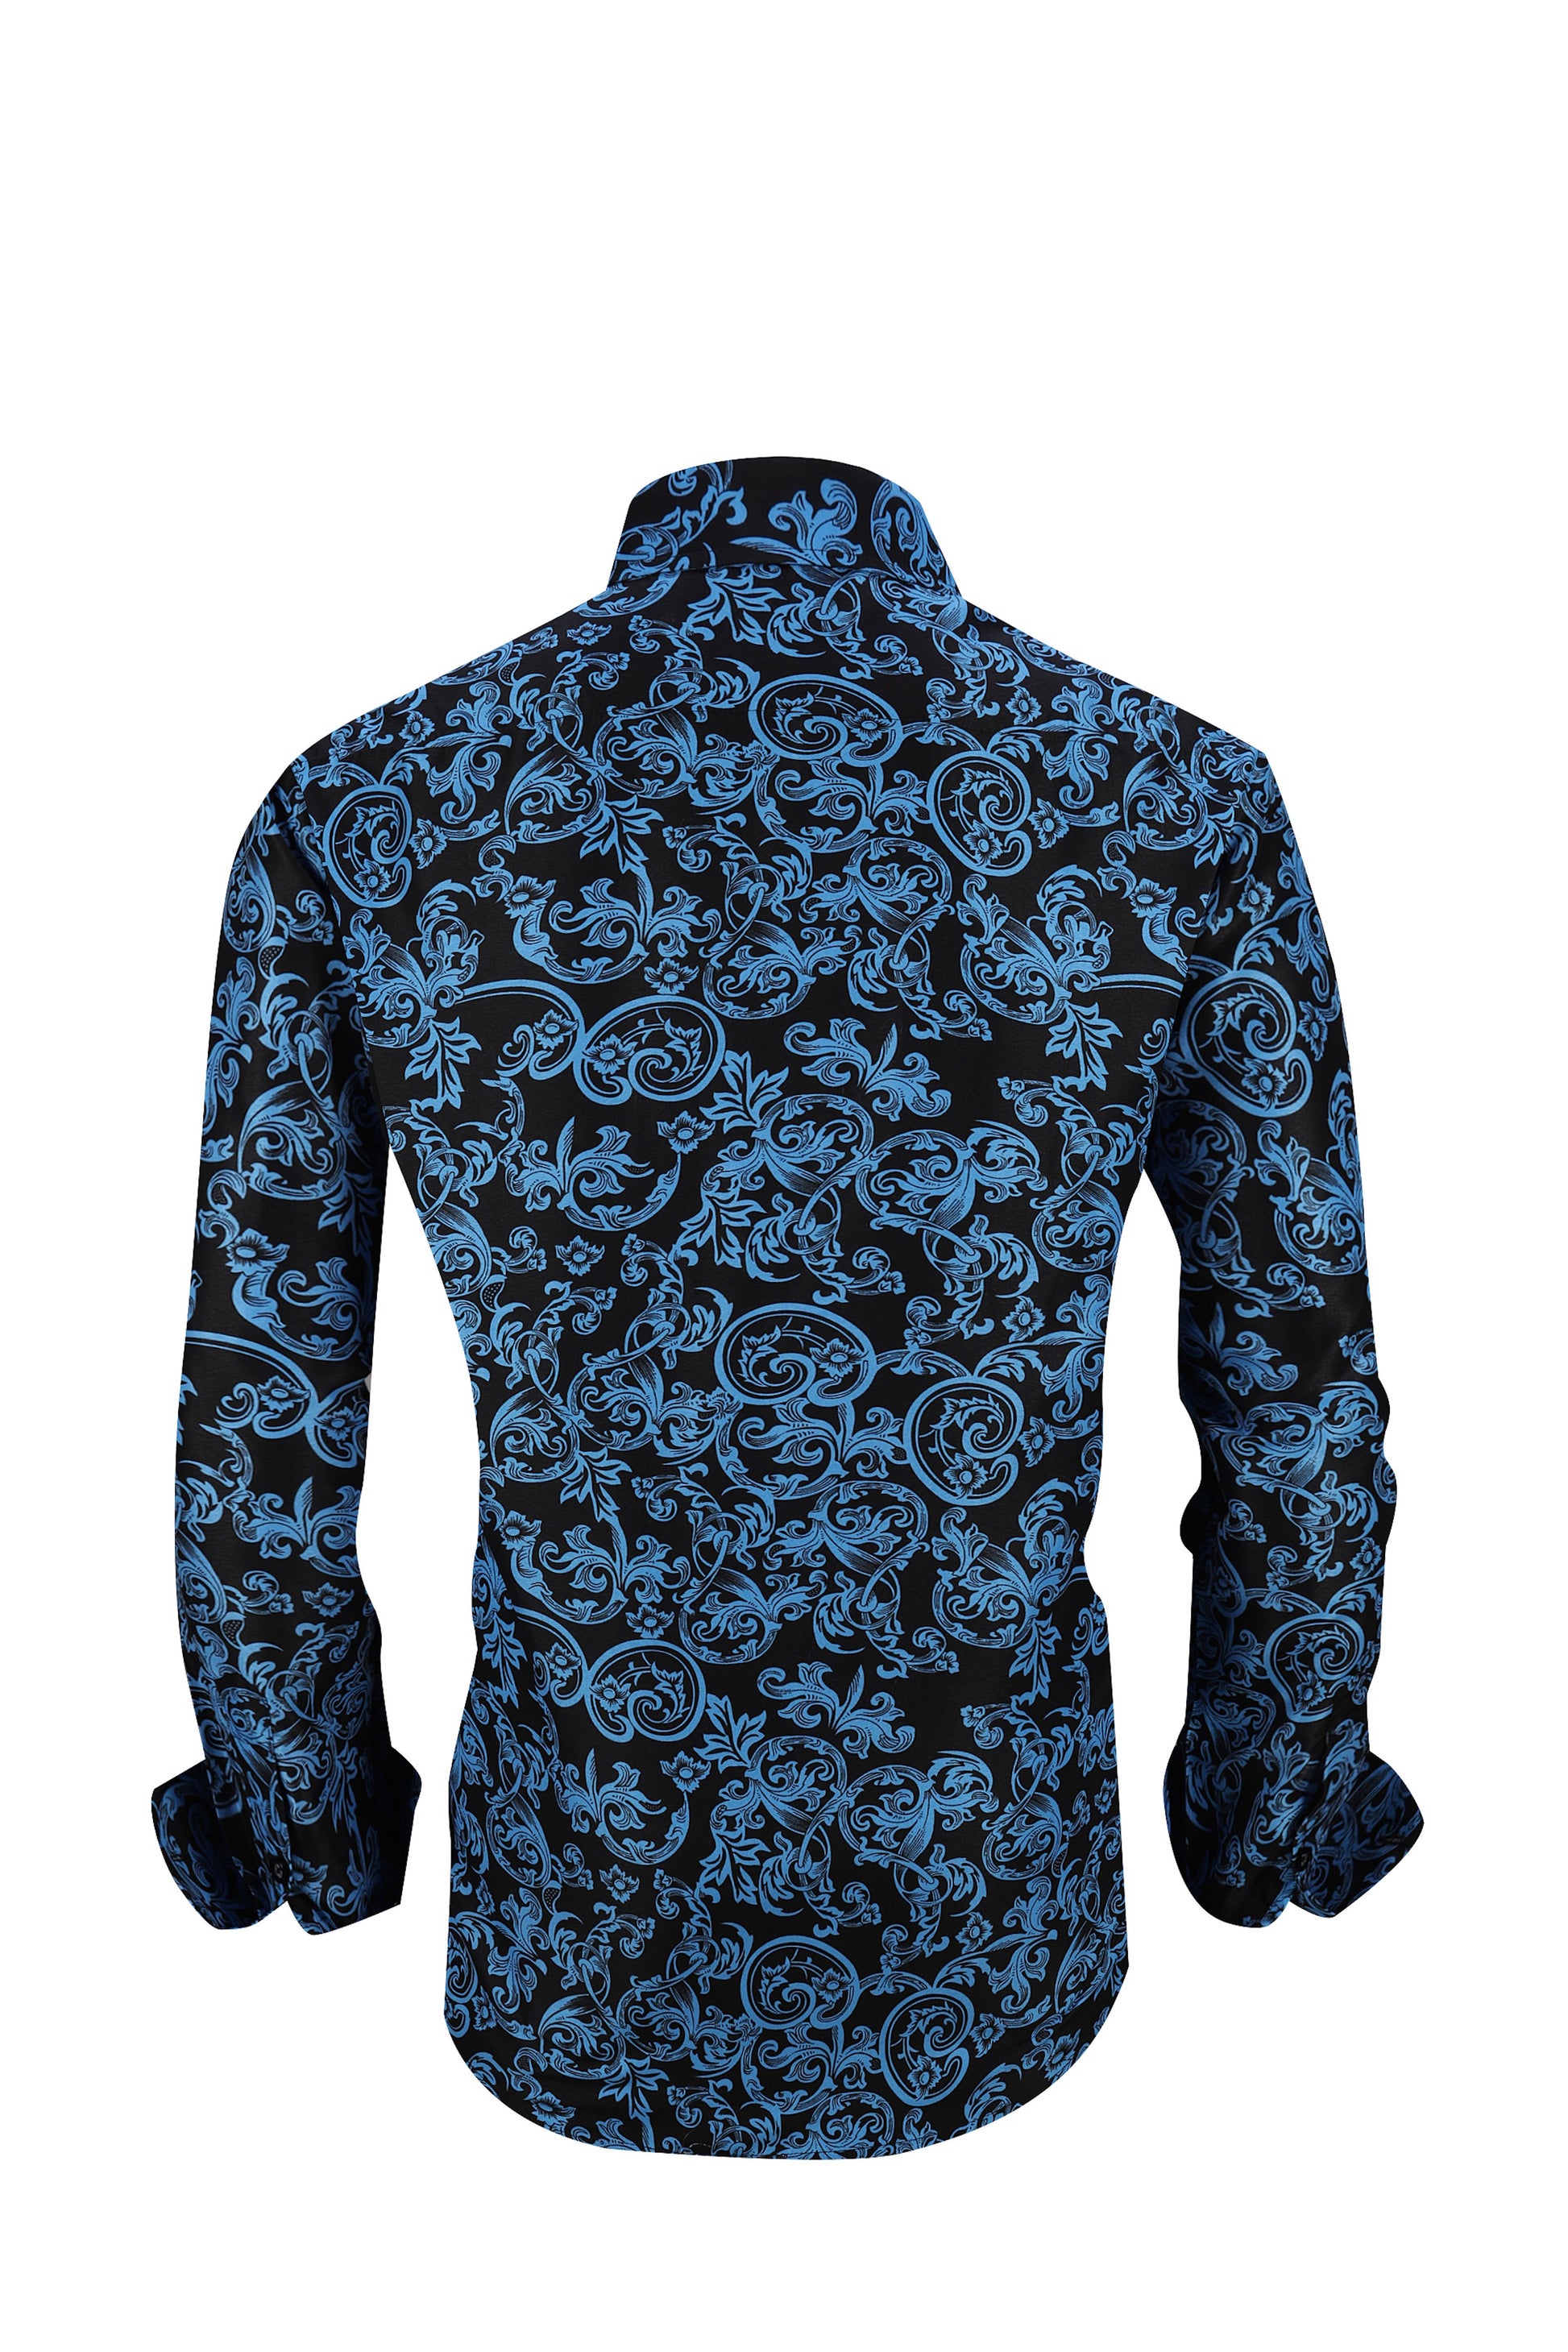 PREMIERE SHIRTS: BLUE/BLACK PAISLEY – Premiere Designer Shirts